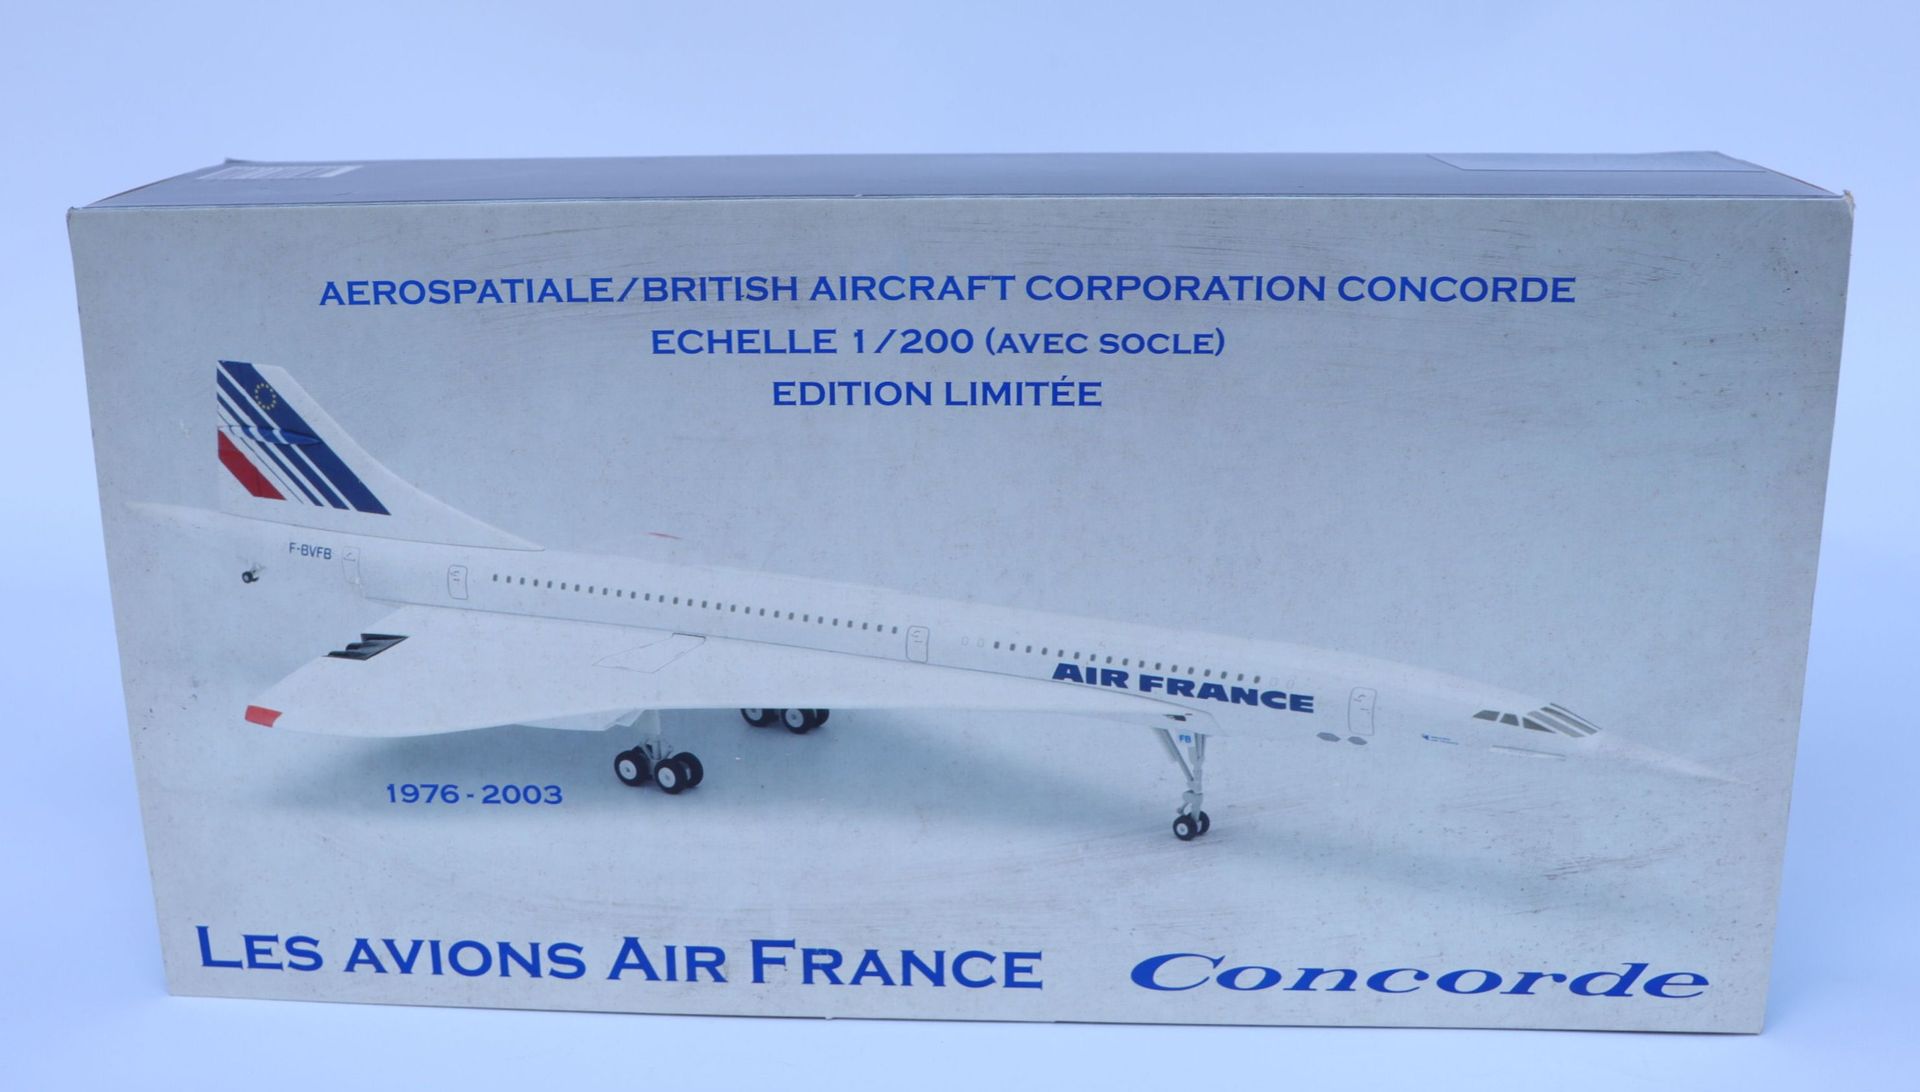 Null 法国康科德航空公司。

大型压铸Socatec协和飞机模型，注册号为F-BVFB。

比例为1/200。法航博物馆限量版。

全新的原包装盒。



&hellip;